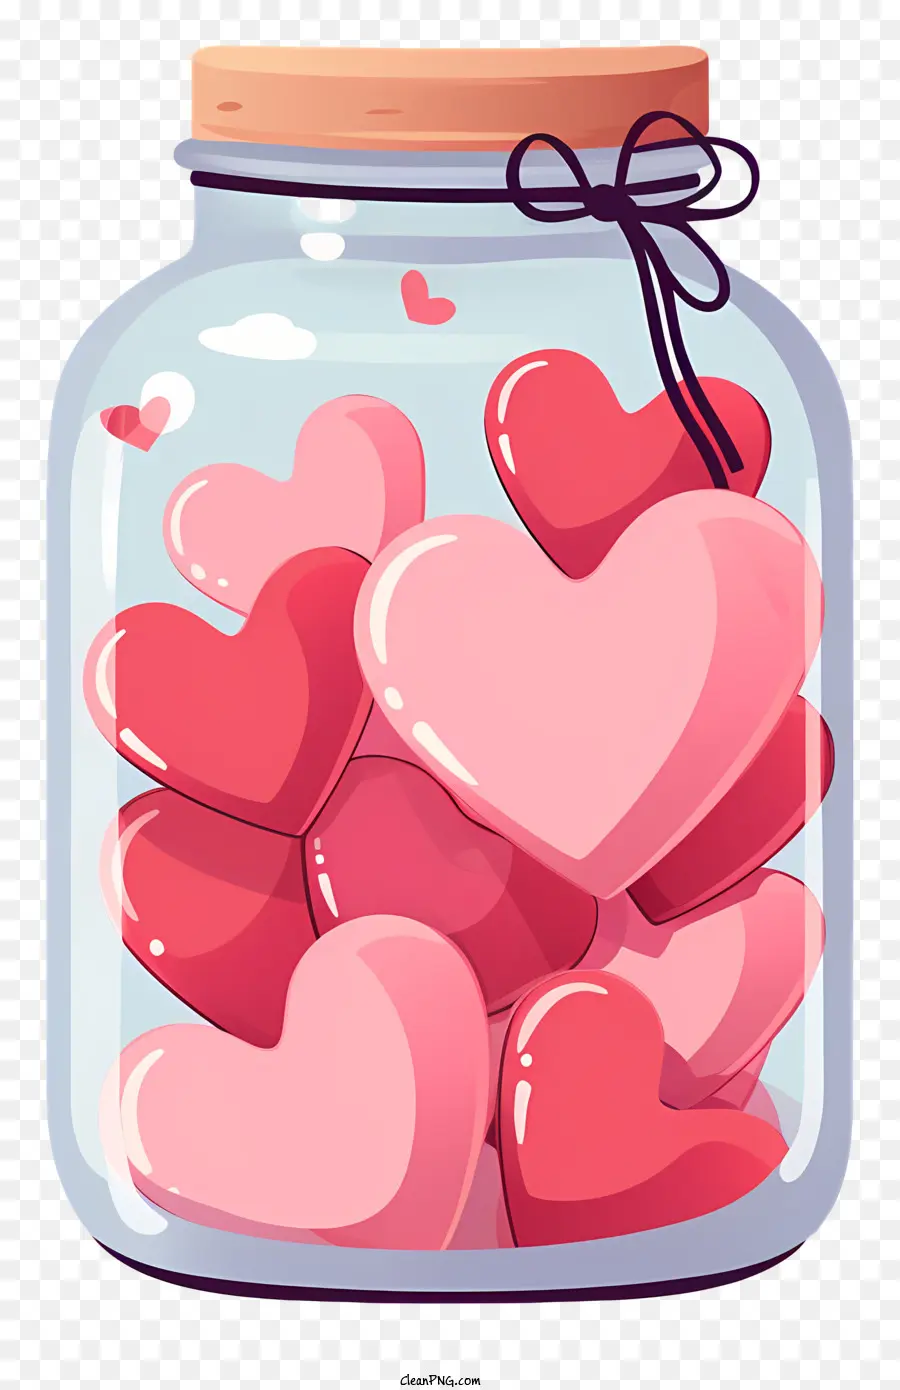 barattolo di muratore con barattolo di vetro trasparente a cuore rosa caramelle a forma di cuore sfondo nero pieghevole - Barattolo trasparente pieno di caramelle a forma di cuore rosa